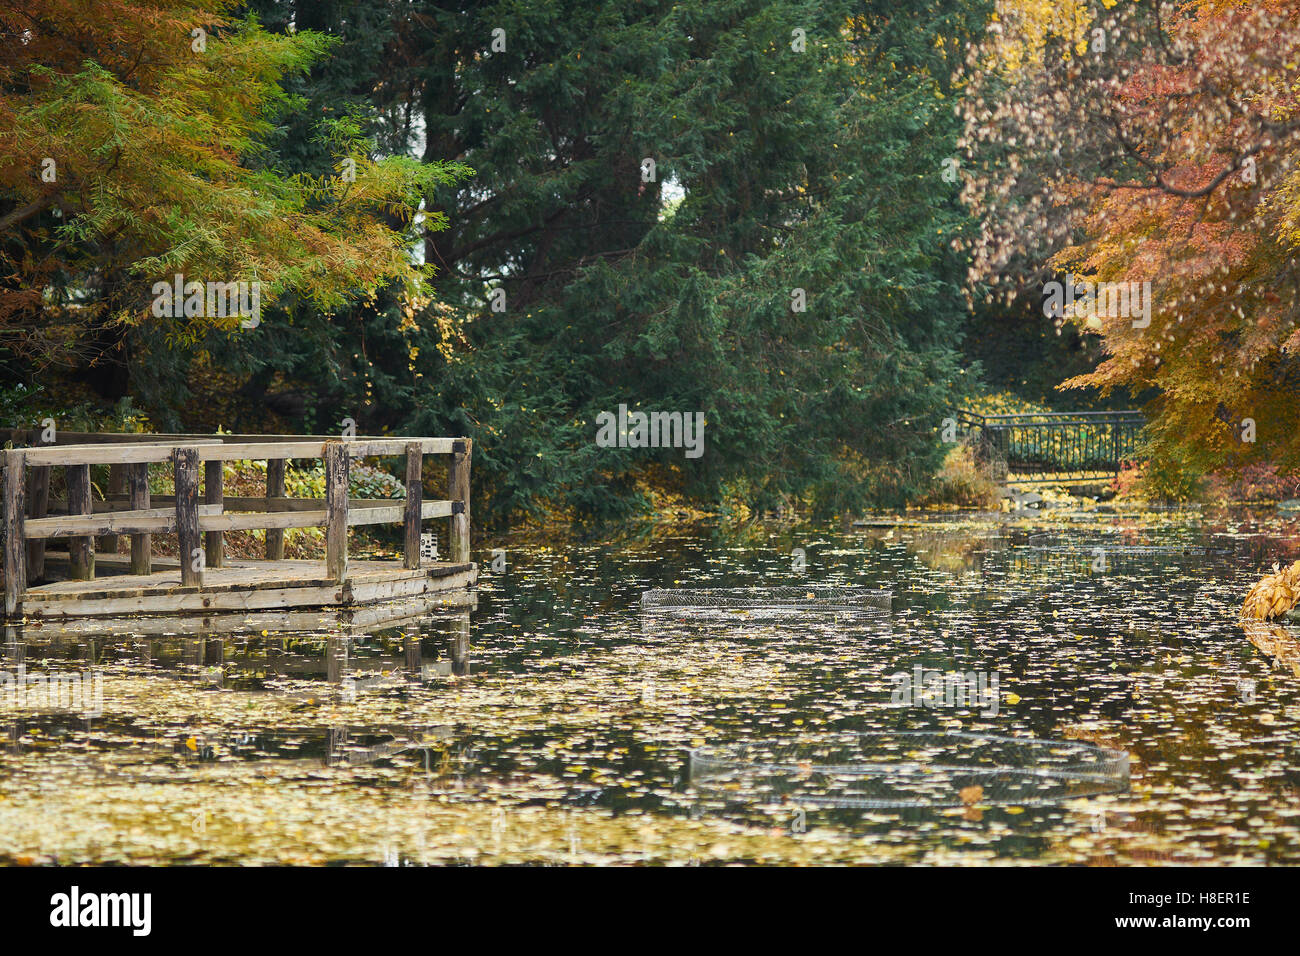 Le silence de l'automne le vide de la solitude de l'eau calme Banque D'Images